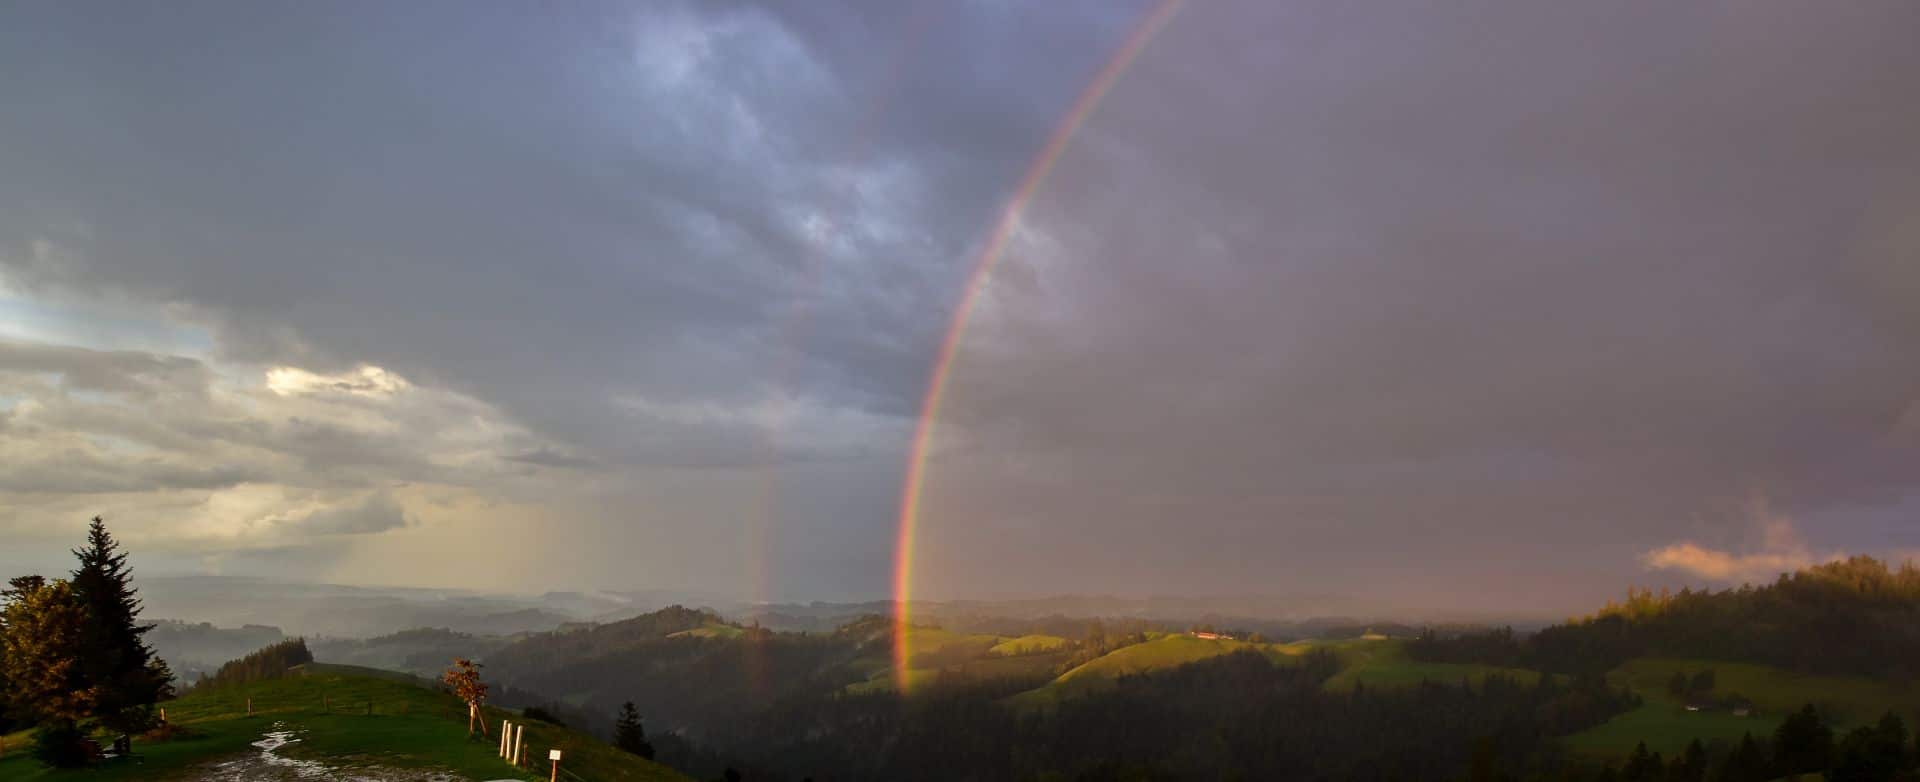 Bild: Regenbogen über der Ahorn Alp